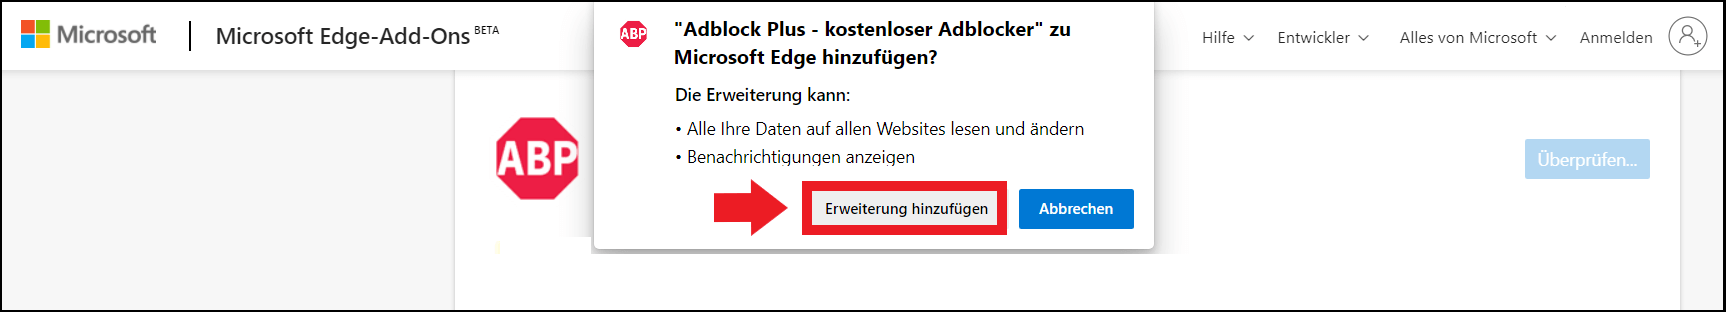 Adblock-Plus Installation über die Edge-Add-Ons-Seite